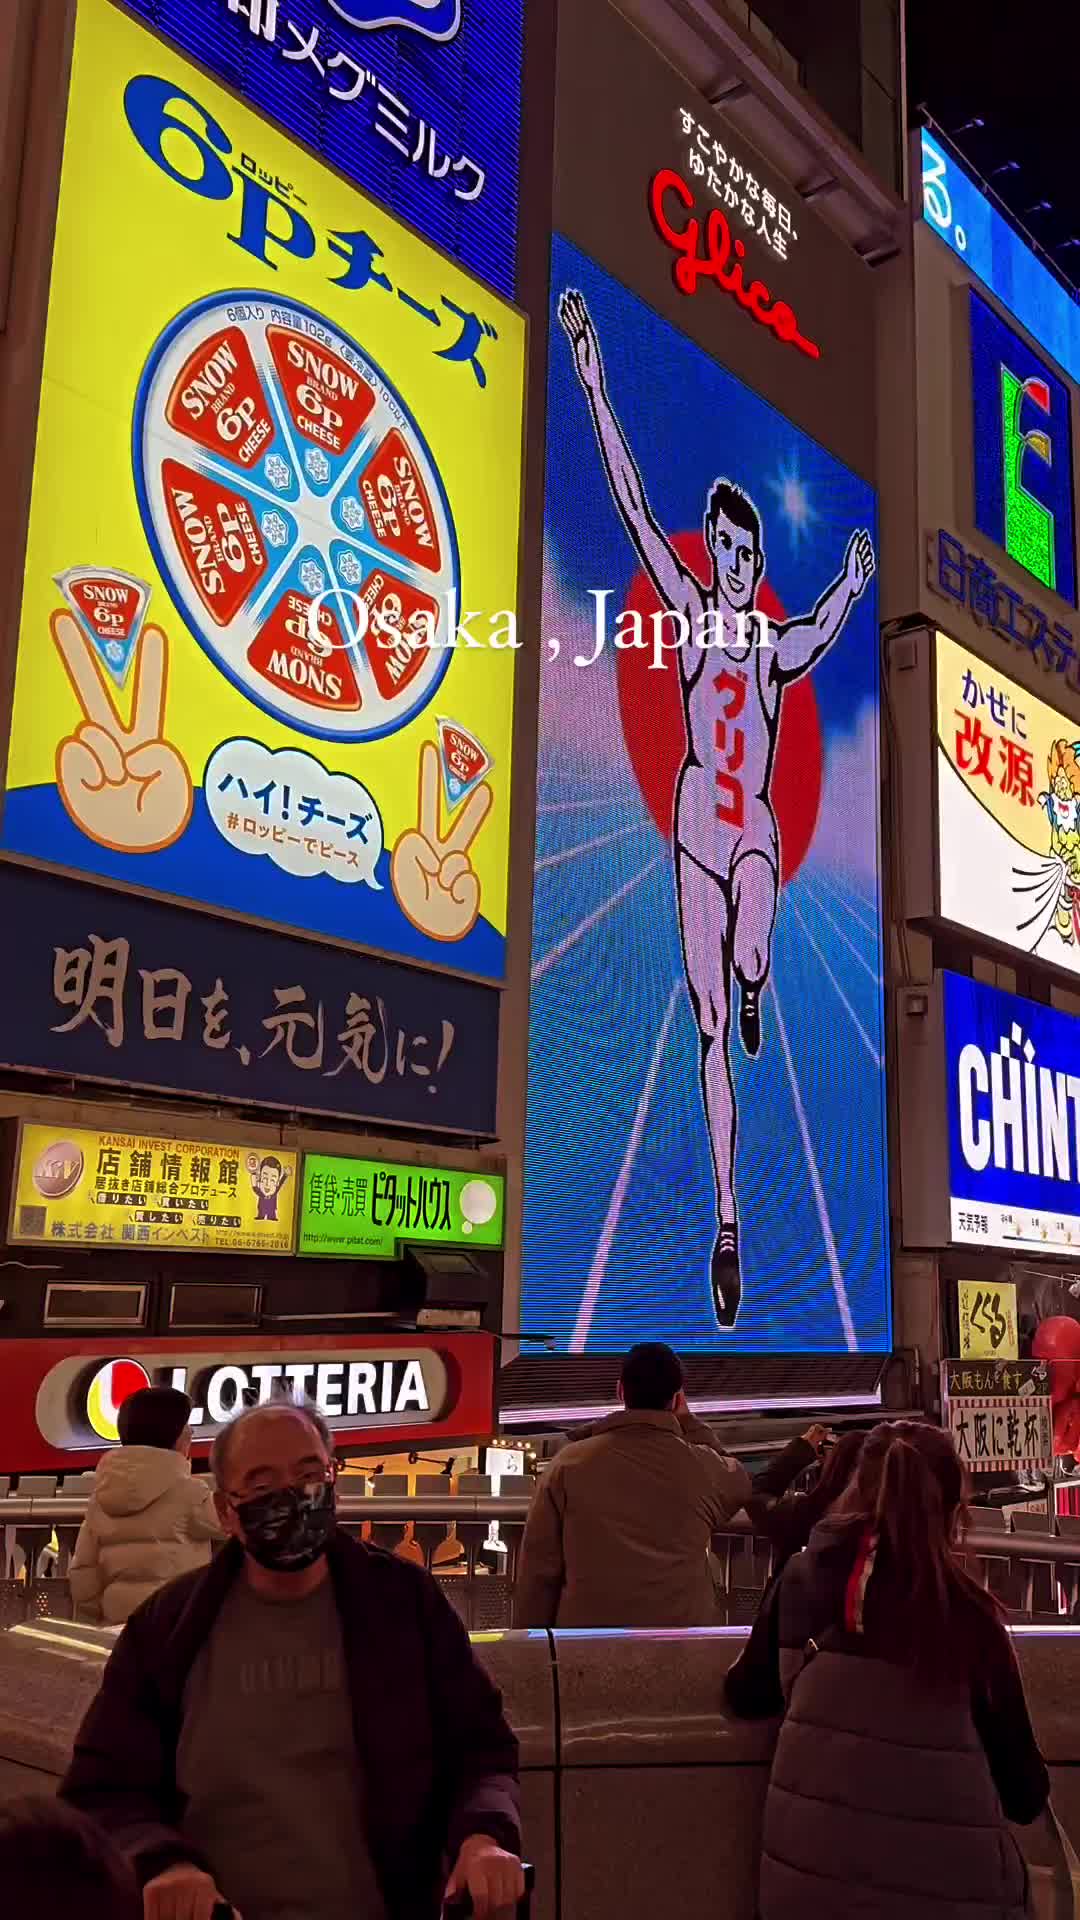 Discover the Magic of Osaka, Japan at Night